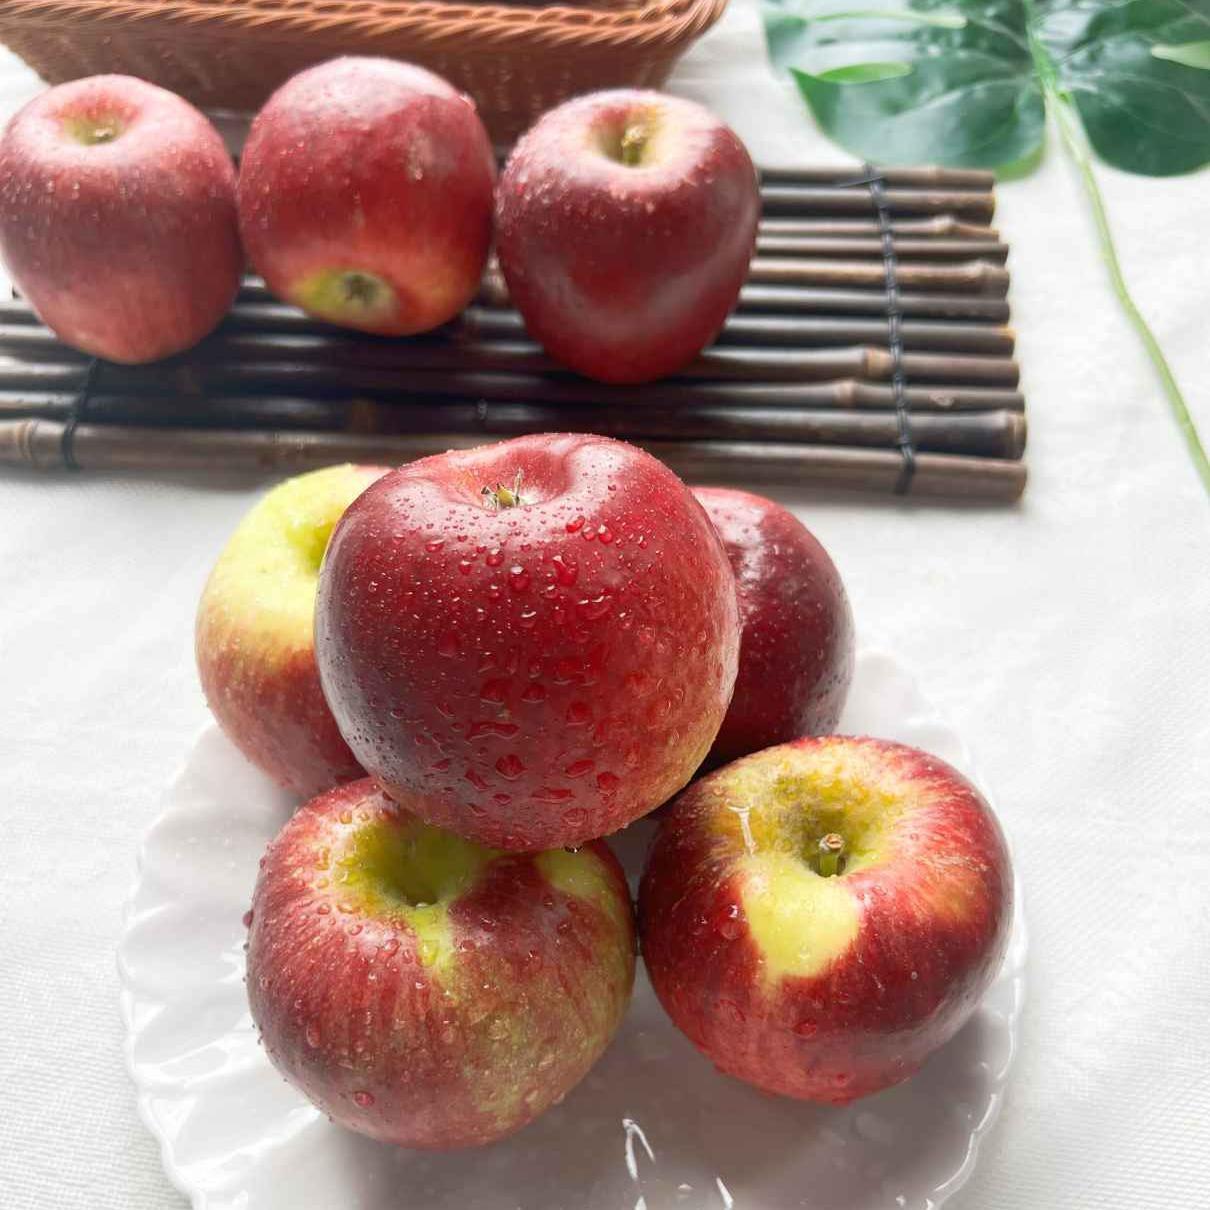 云南华硕苹果4斤大果 脆甜微酸 风味十足 新鲜水果